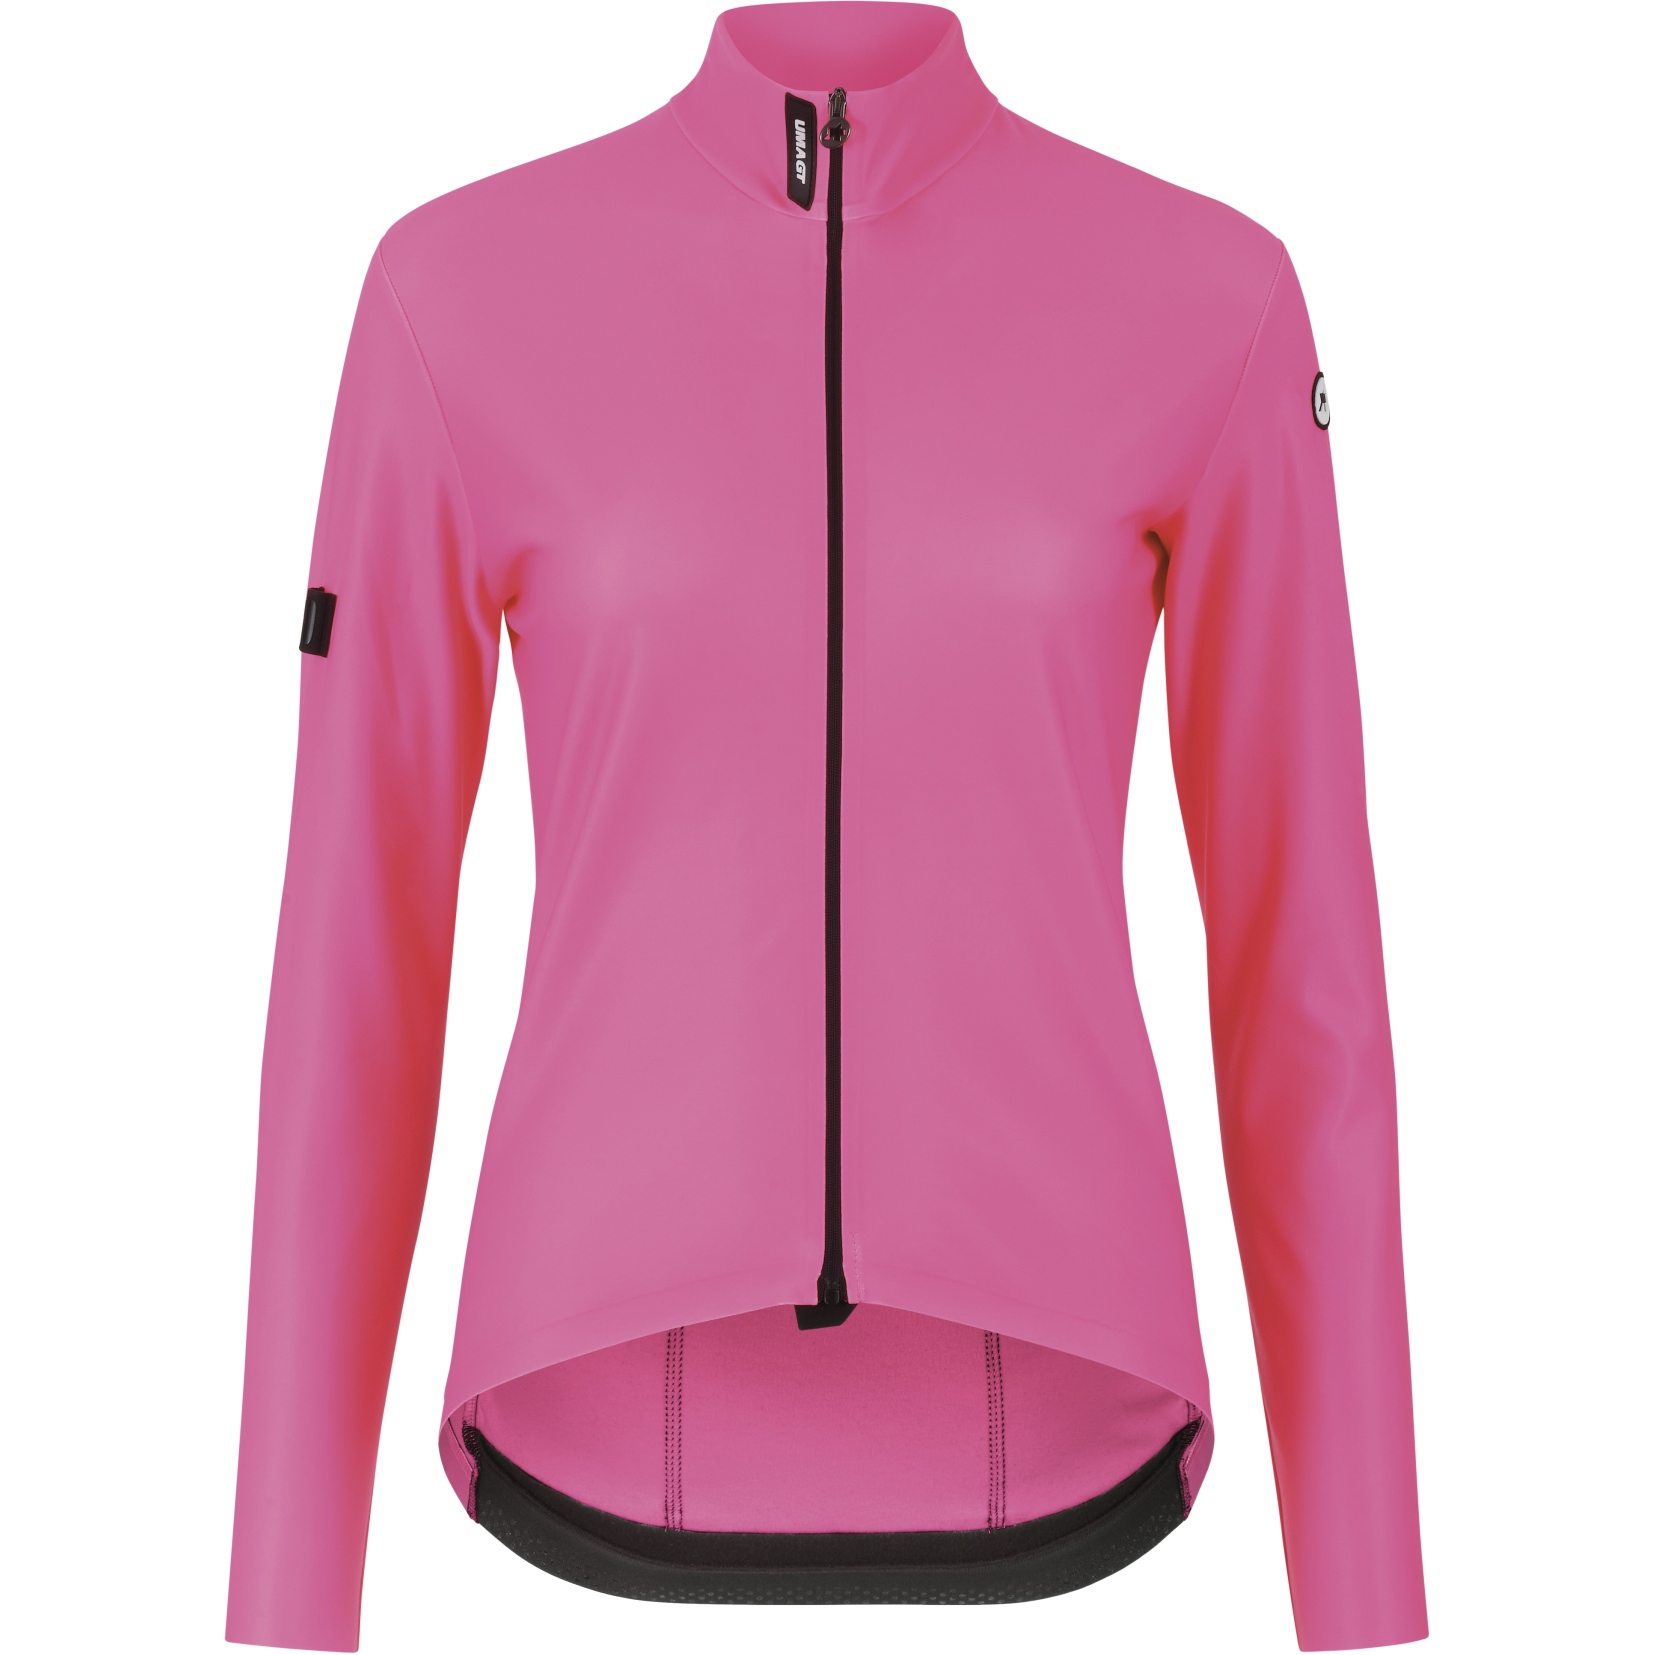 Productfoto van Assos UMA GT Lente Herfst Dames Fietsshirt met Lange Mouwen C2 - fluo pink